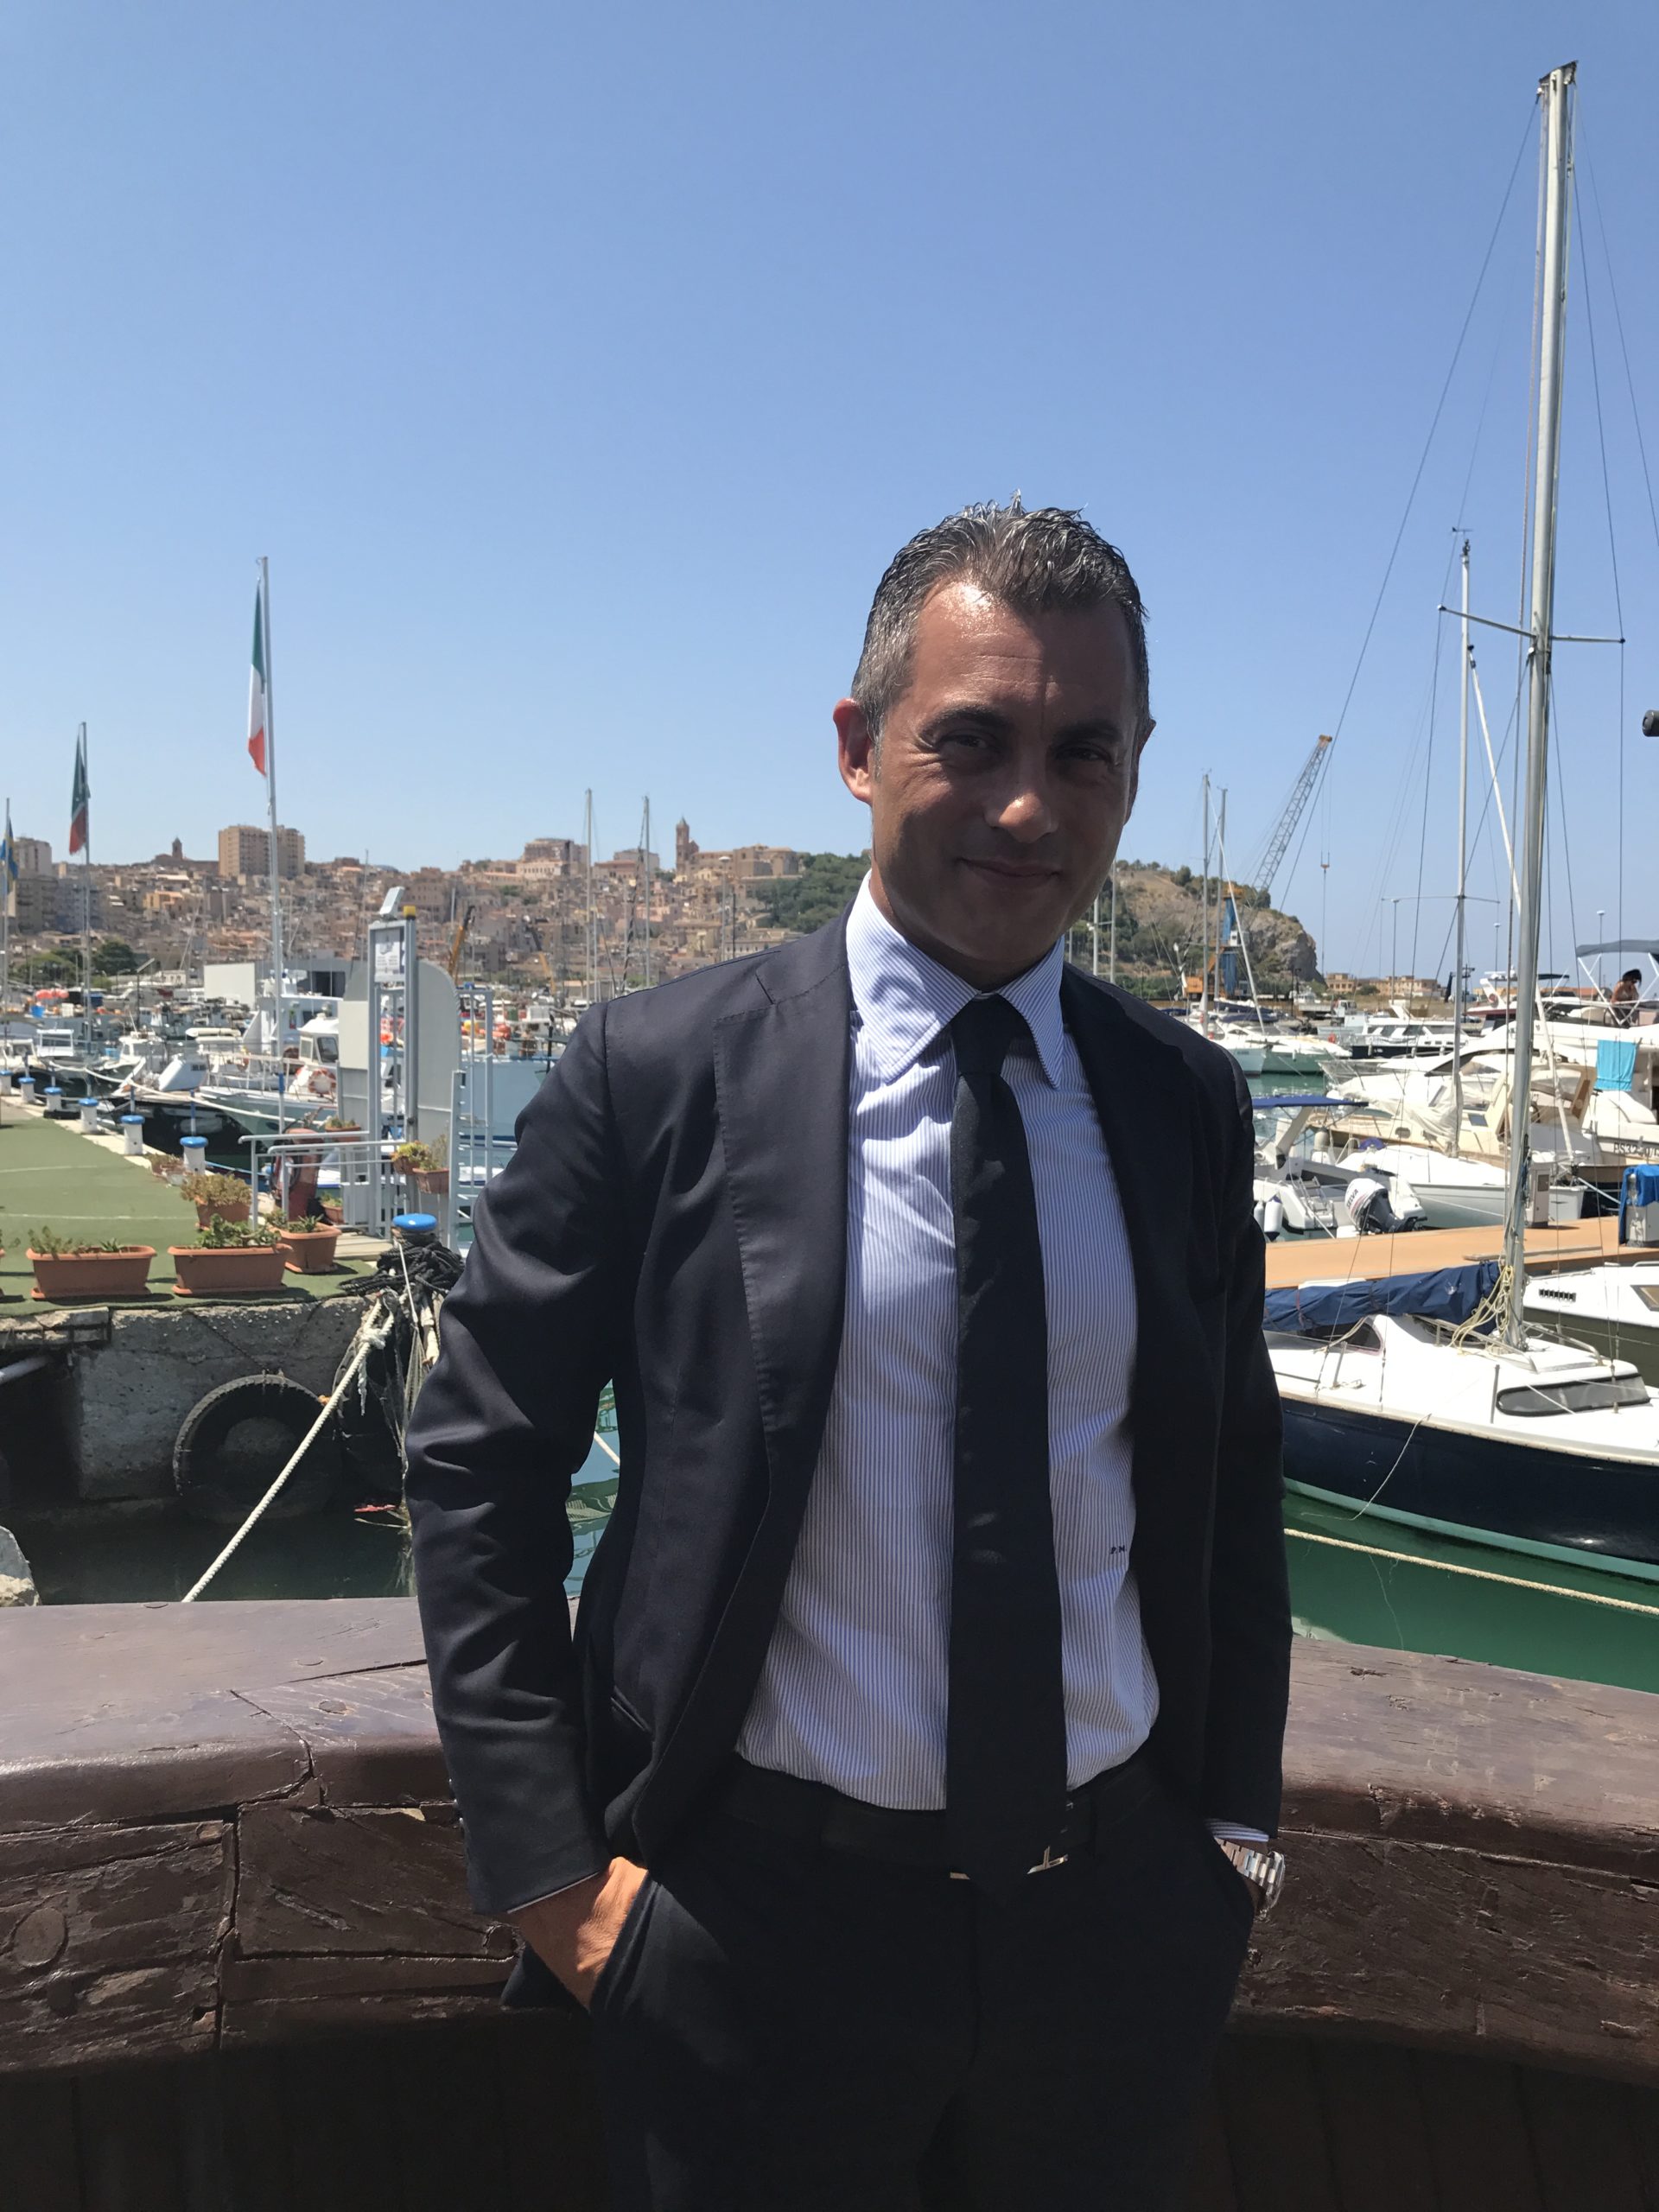 Autorità portuale, Pasqualino Monti: “È il momento fare chiarezza"